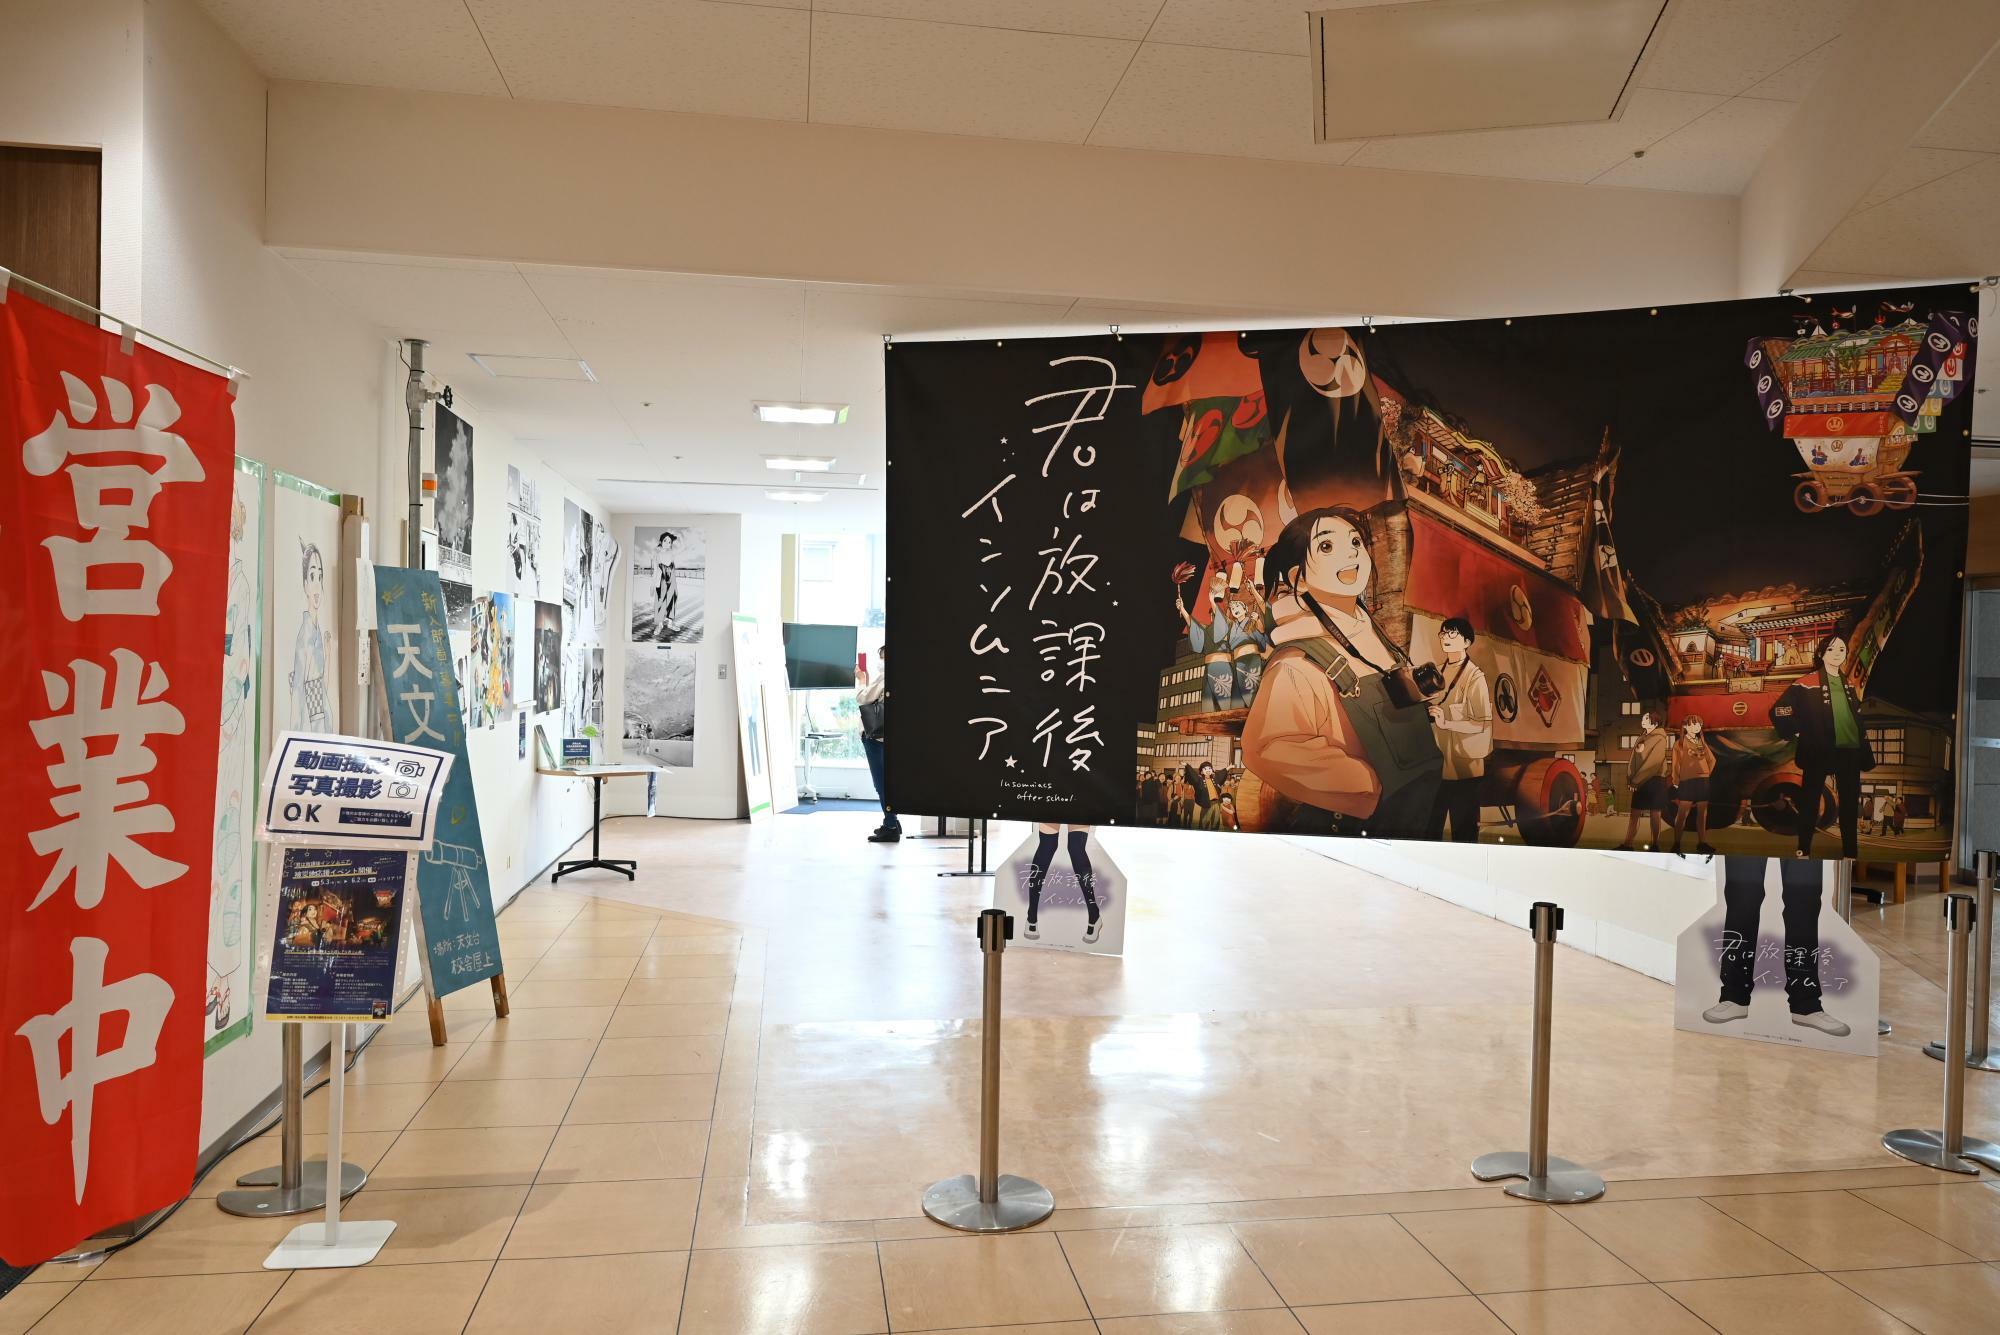 6月2日まで七尾駅前の商業施設「パトリア」で開催中の「『君は放課後インソムニア』被災地応援イベント」